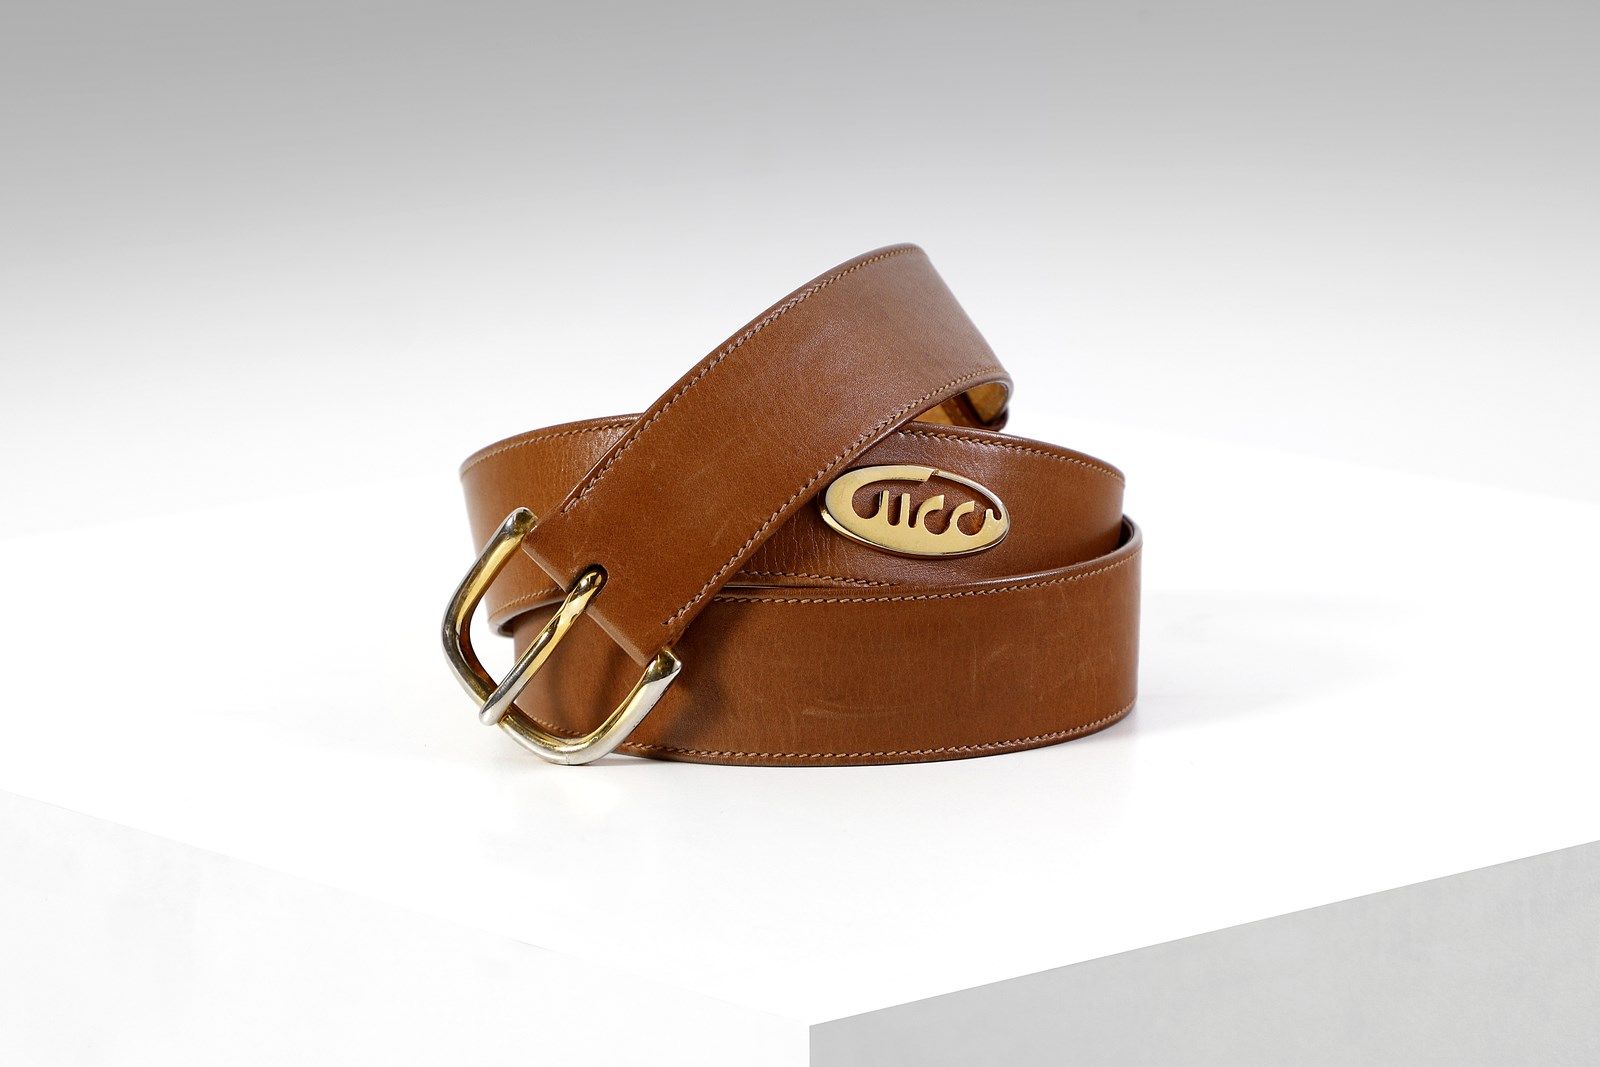 GUCCI Tan leather belt with gold buckle. Late 80's. Cinturón de cuero marrón con&hellip;